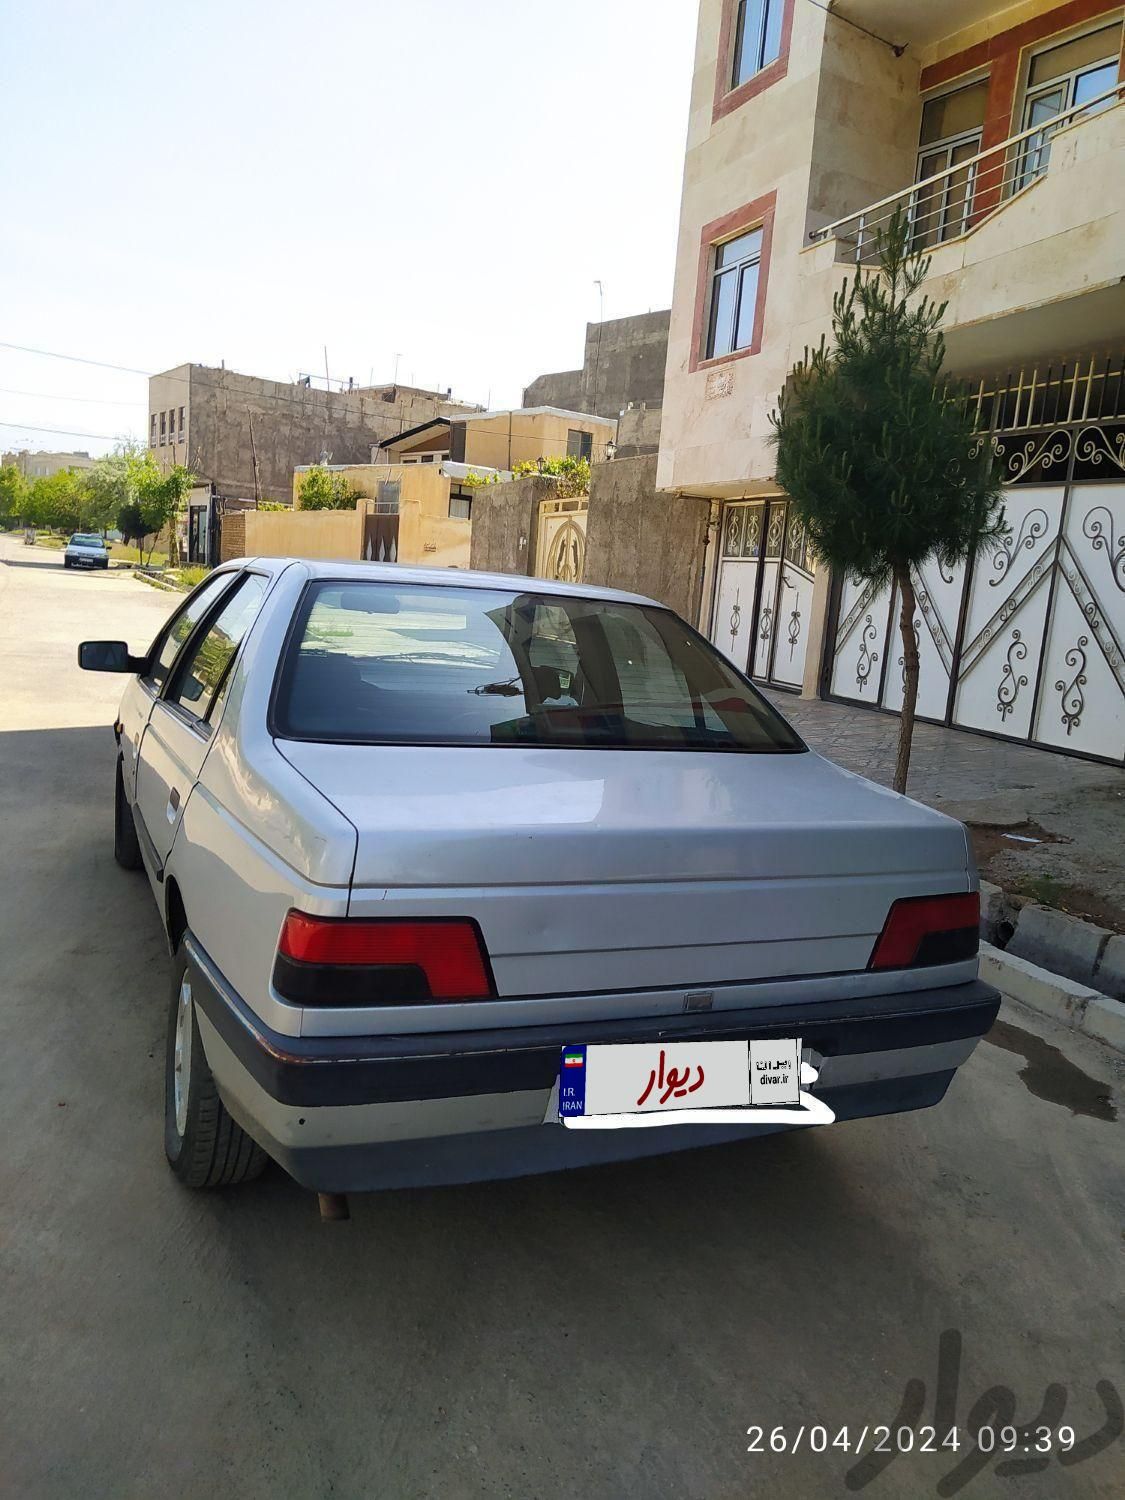 پژو 405 GLX بنزینی، مدل ۱۳۸۷|سواری و وانت|نظرآباد, |دیوار